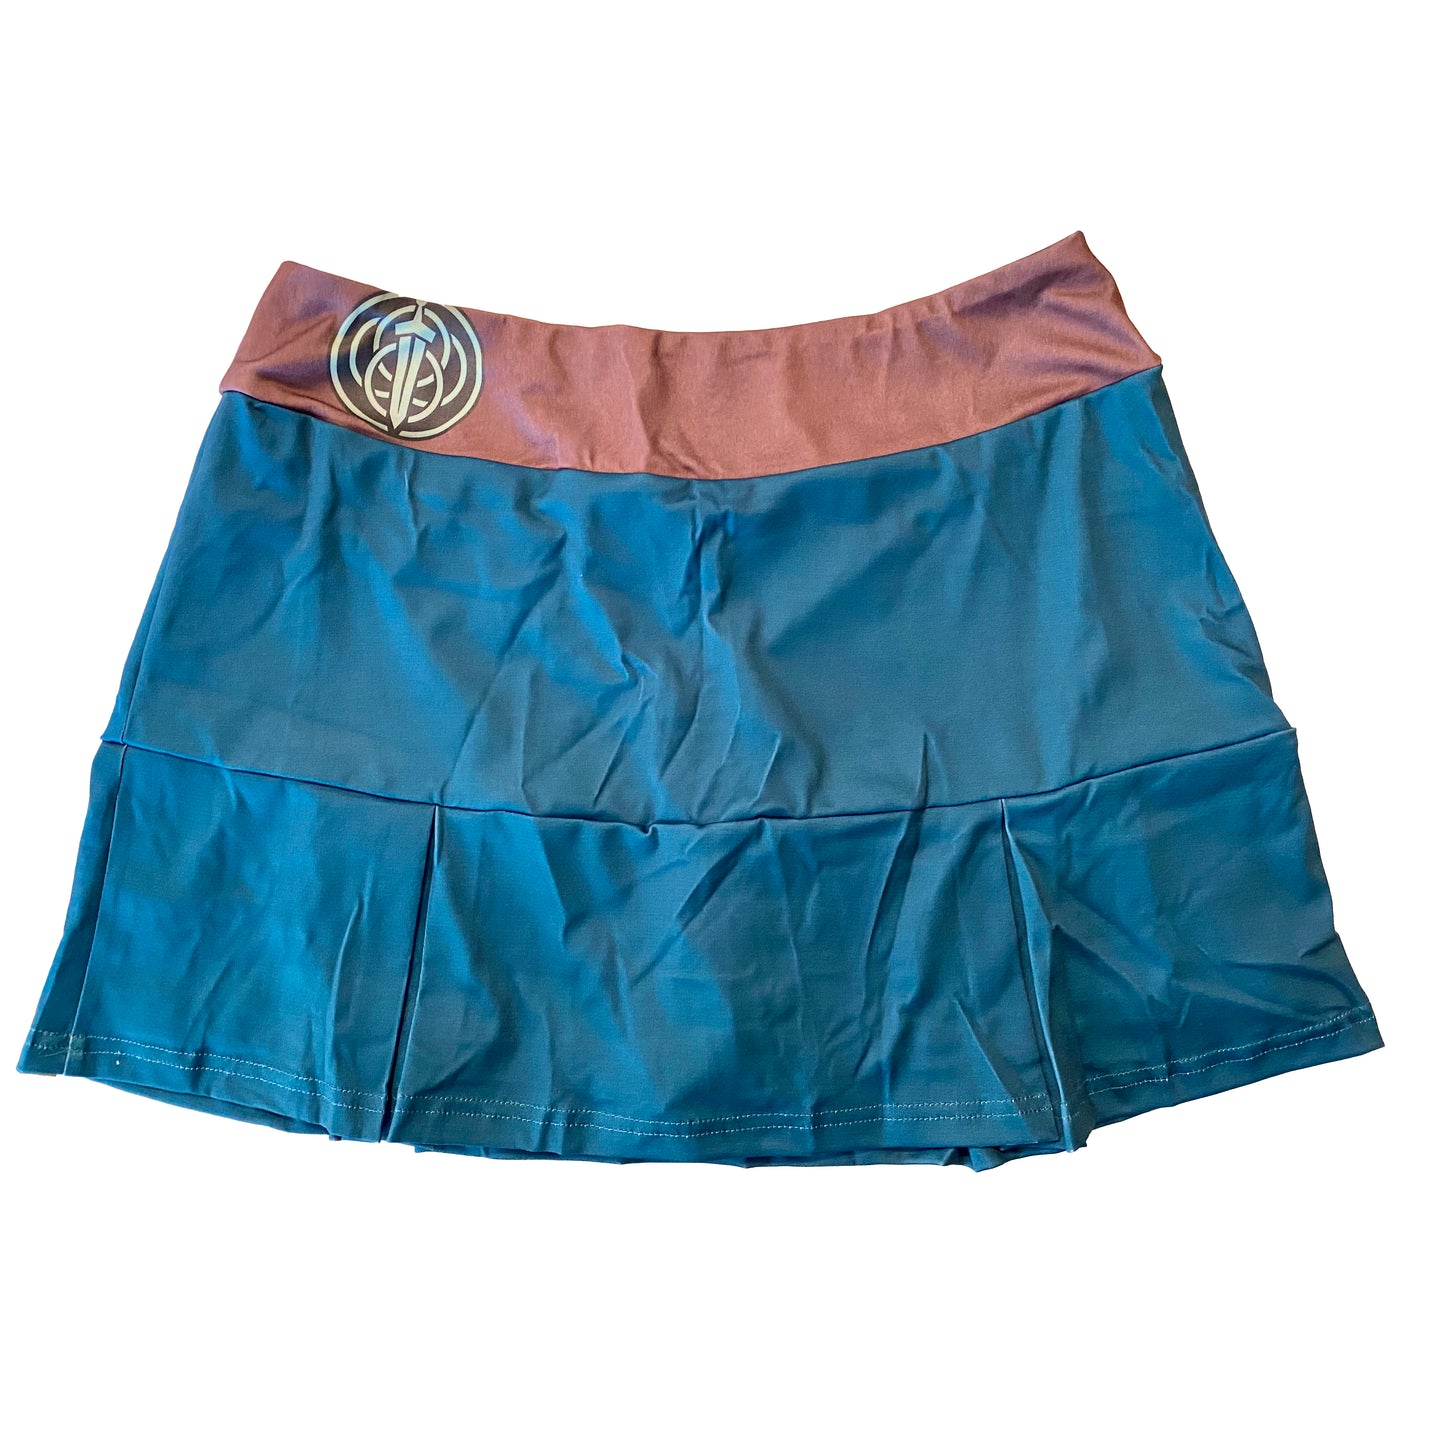 Merida Inspired Sport Skirt